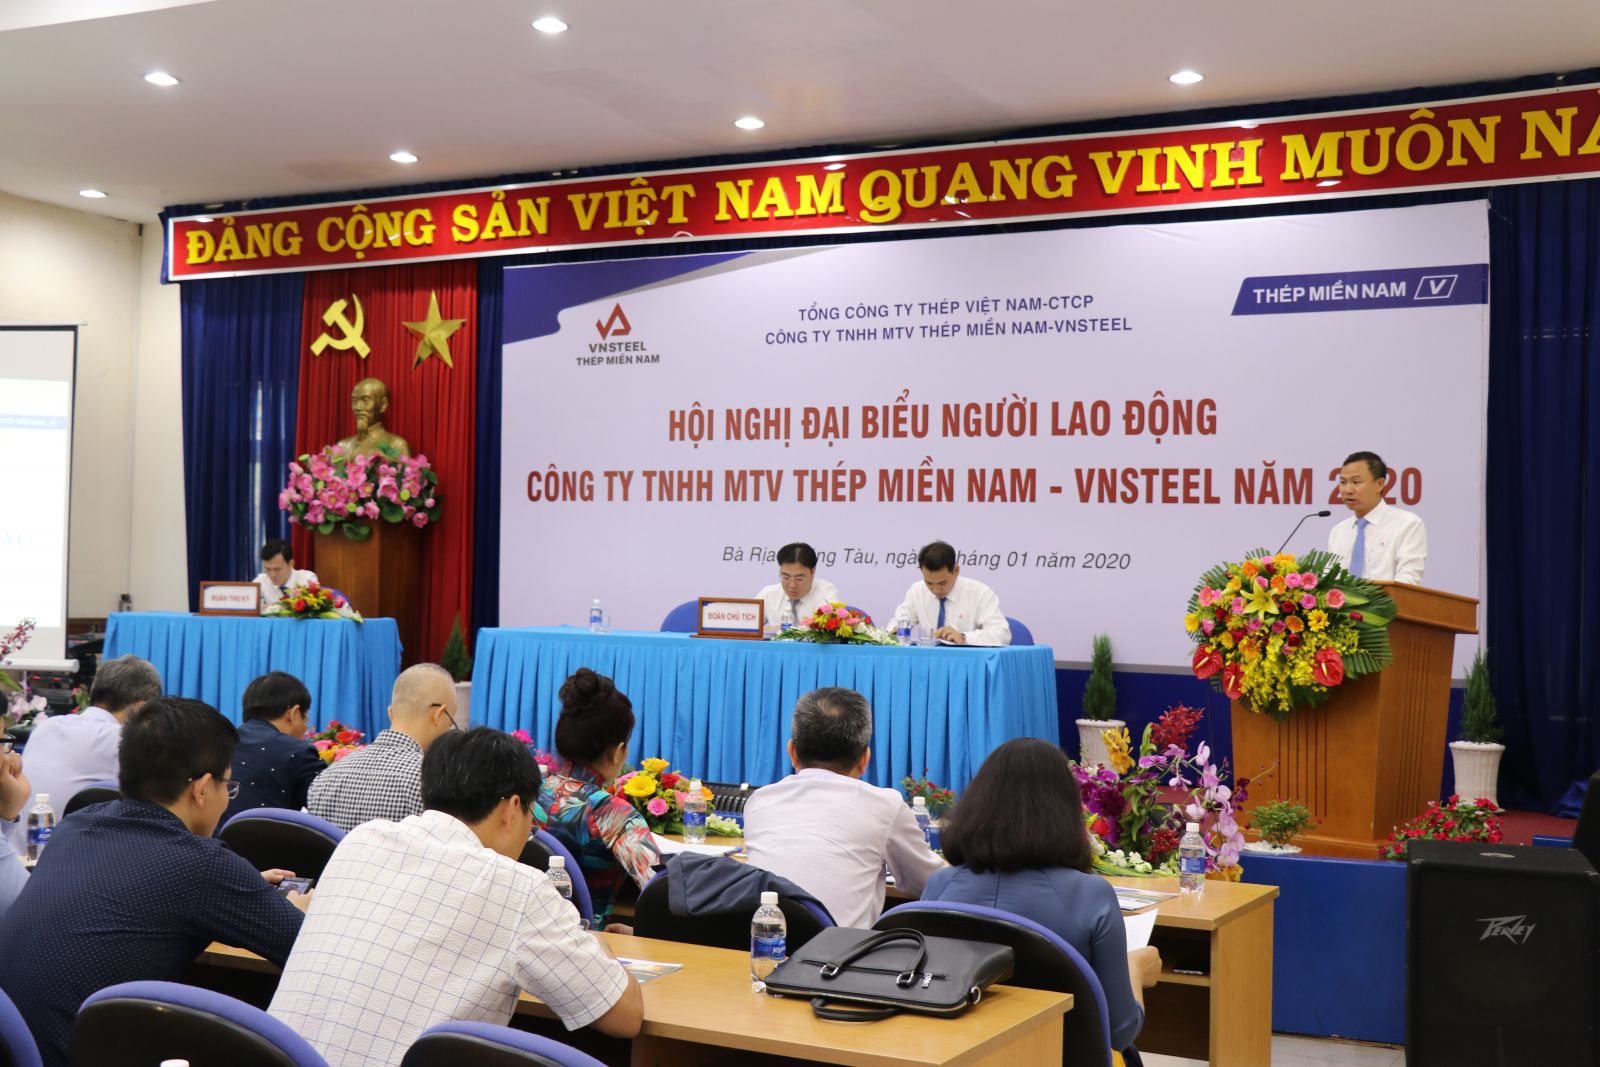 Thép Miền Nam tổ chức Hội nghị đại biểu Người lao động năm 2020